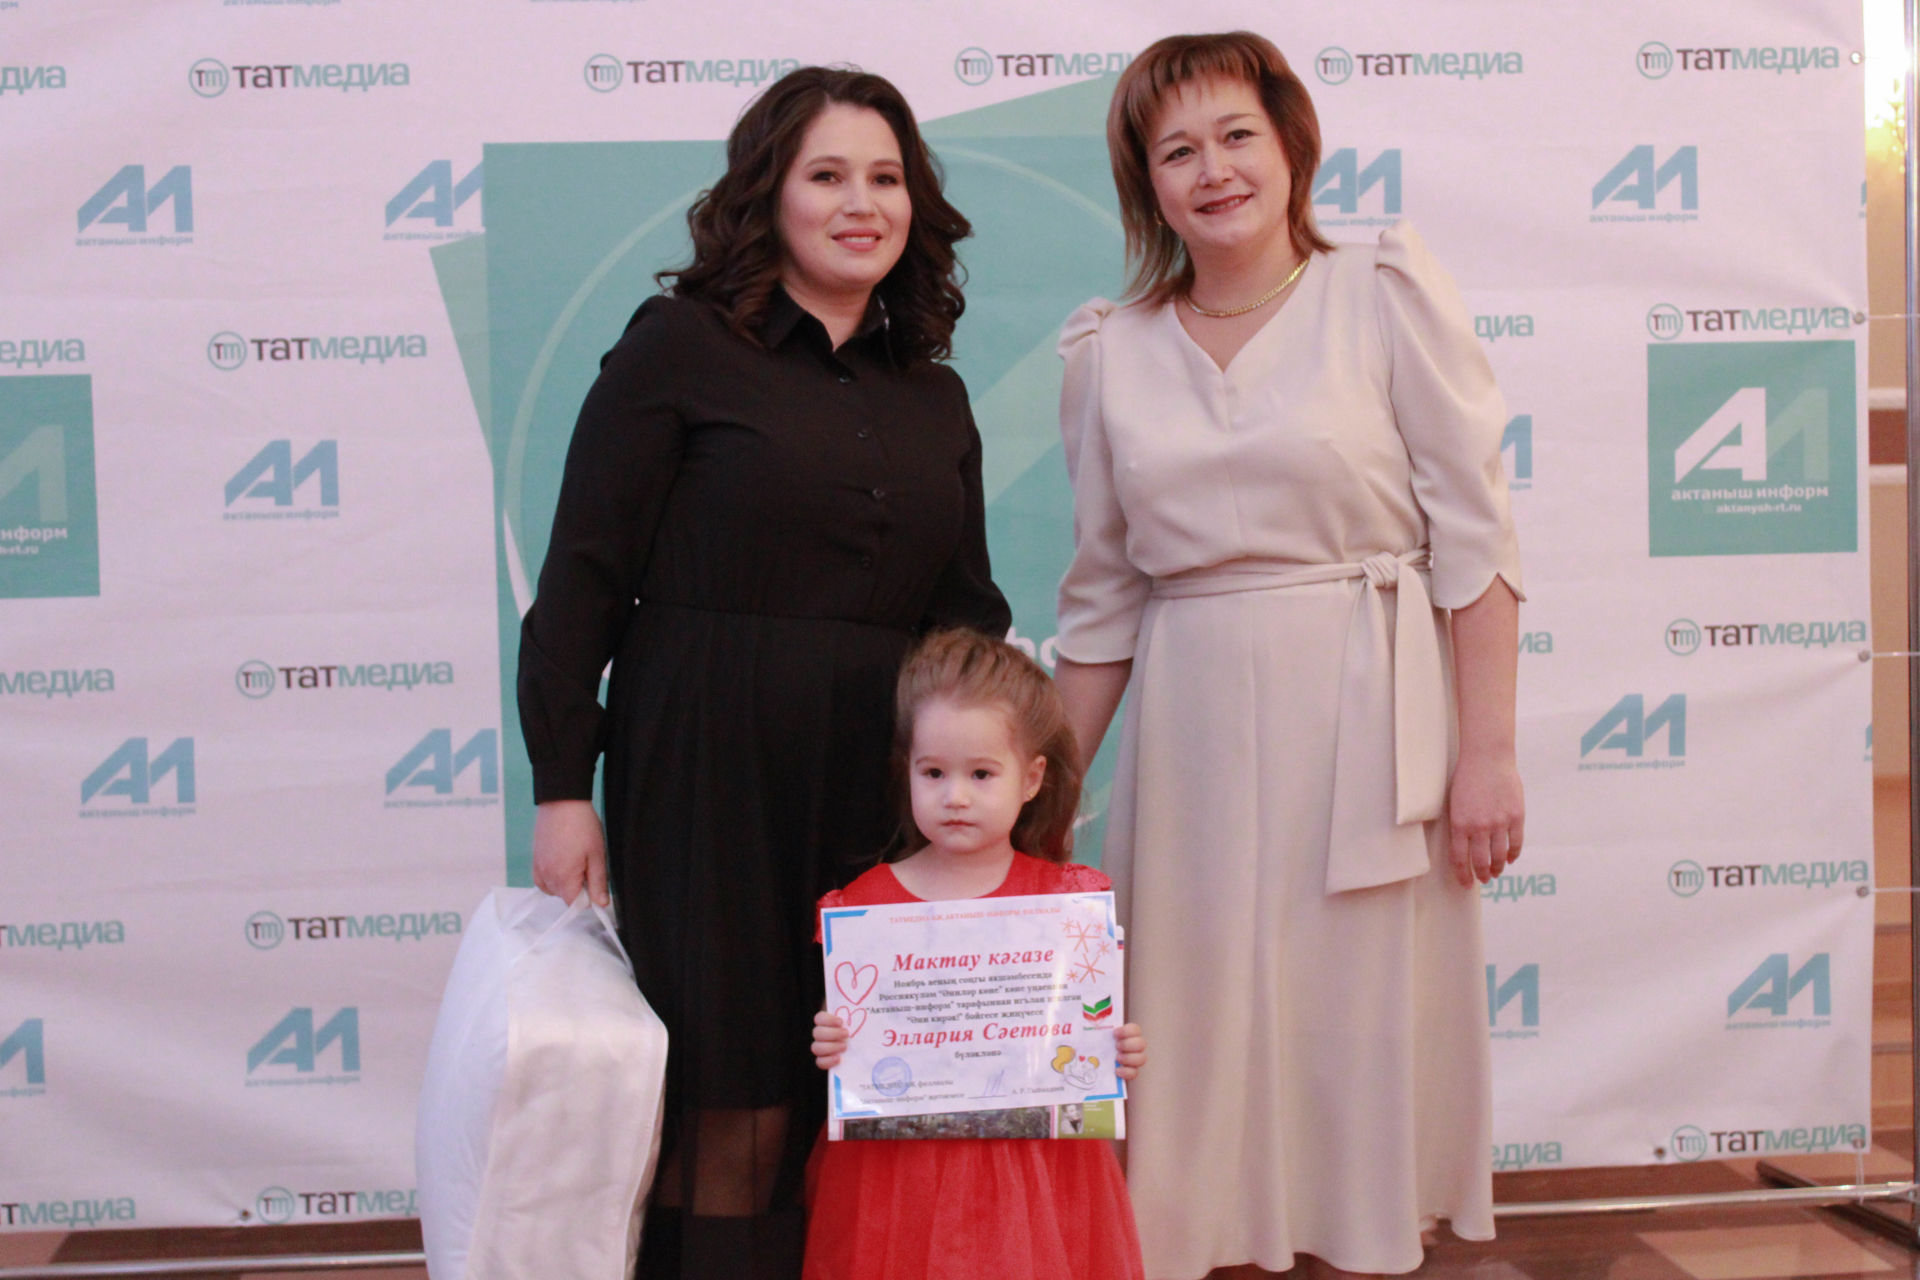 Ләйсән Нурлыева: "Актаныш-информ" бәйгесенә катнашып балаларыгыз сезне бар дөньяга танытты